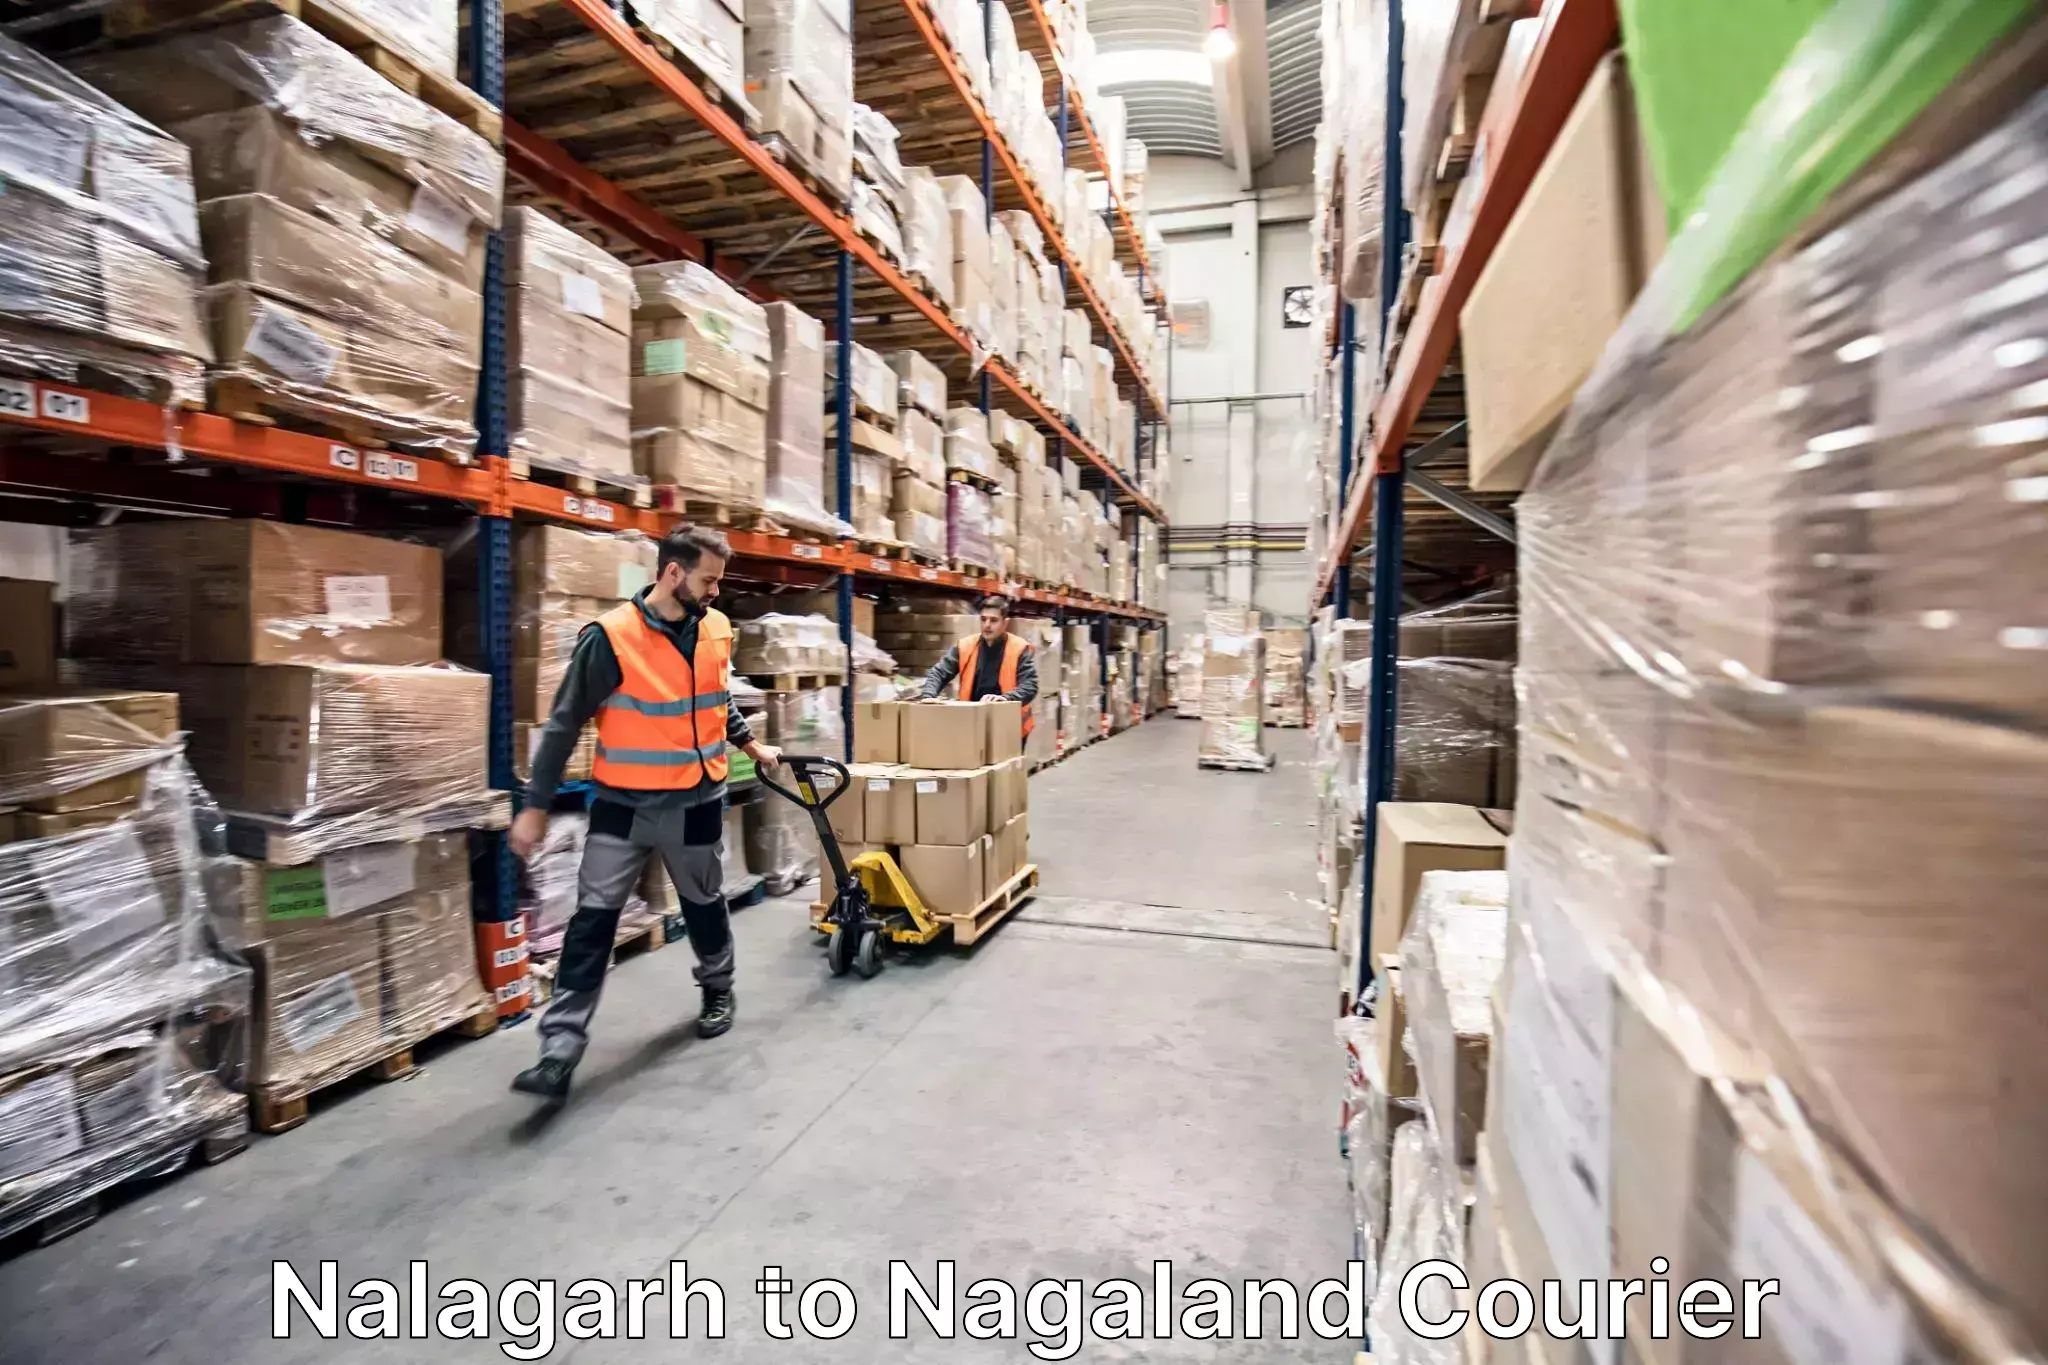 Professional furniture movers Nalagarh to Mokokchung